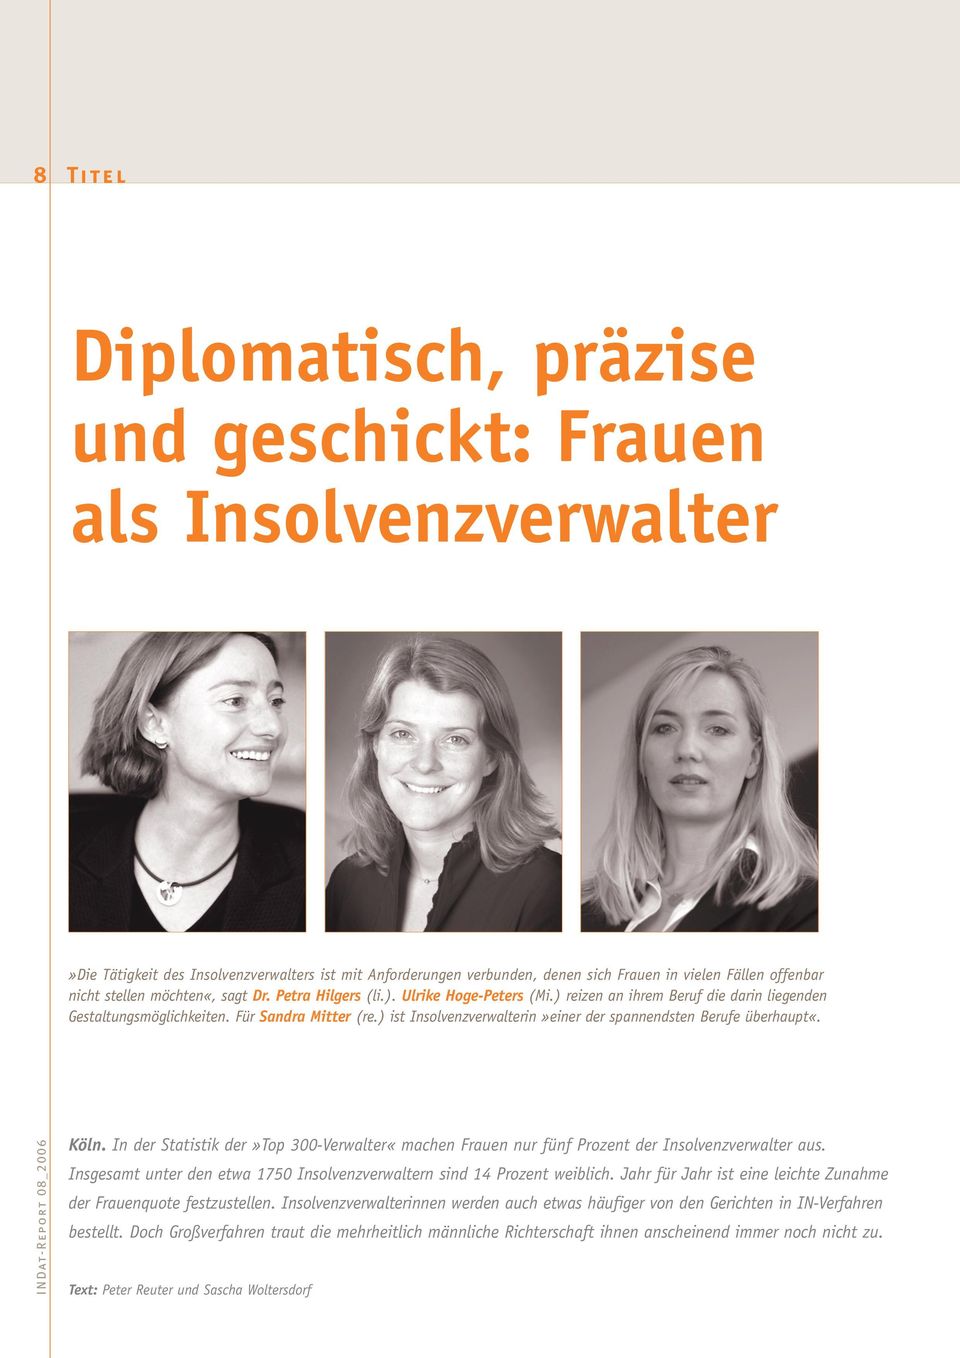 ) ist Insolvenzverwalterin»einer der spannendsten Berufe überhaupt«. INDat-Report 8_ Köln. In der Statistik der»top -Verwalter«machen Frauen nur fünf Prozent der Insolvenzverwalter aus.